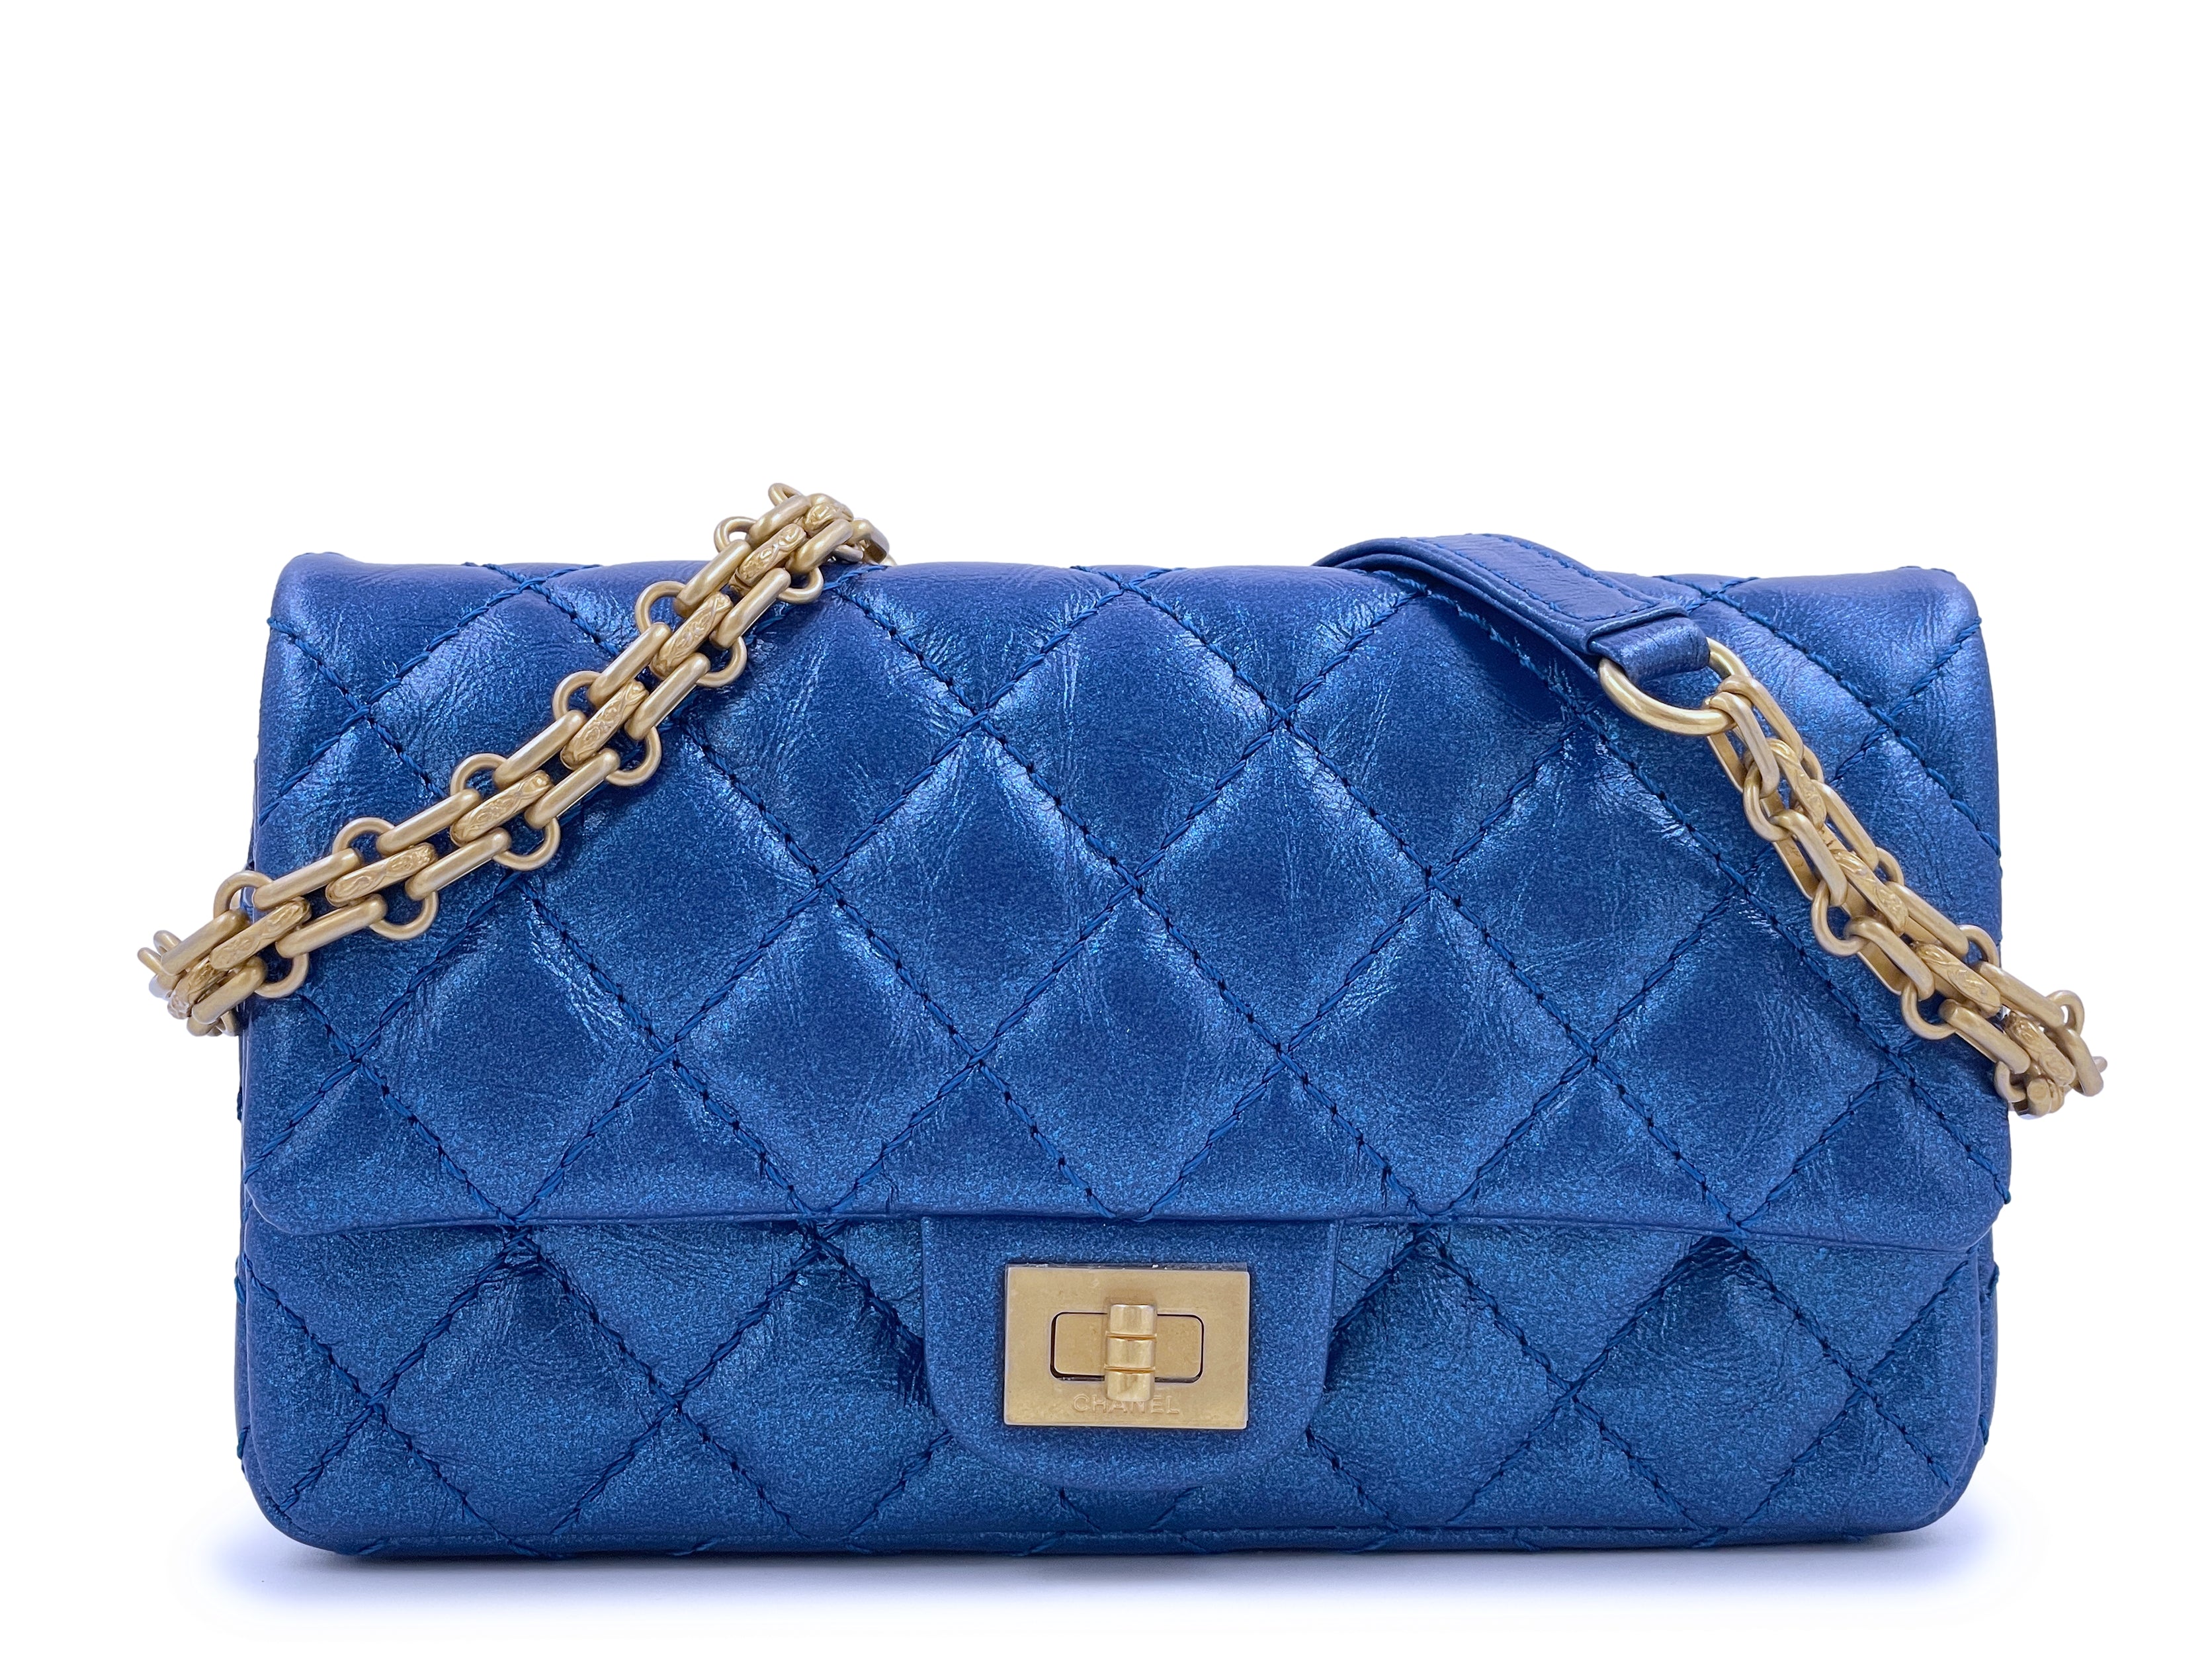 NIB 19A Chanel Reissue Waist Bag Fanny Pack Iridescent Sapphire Blue